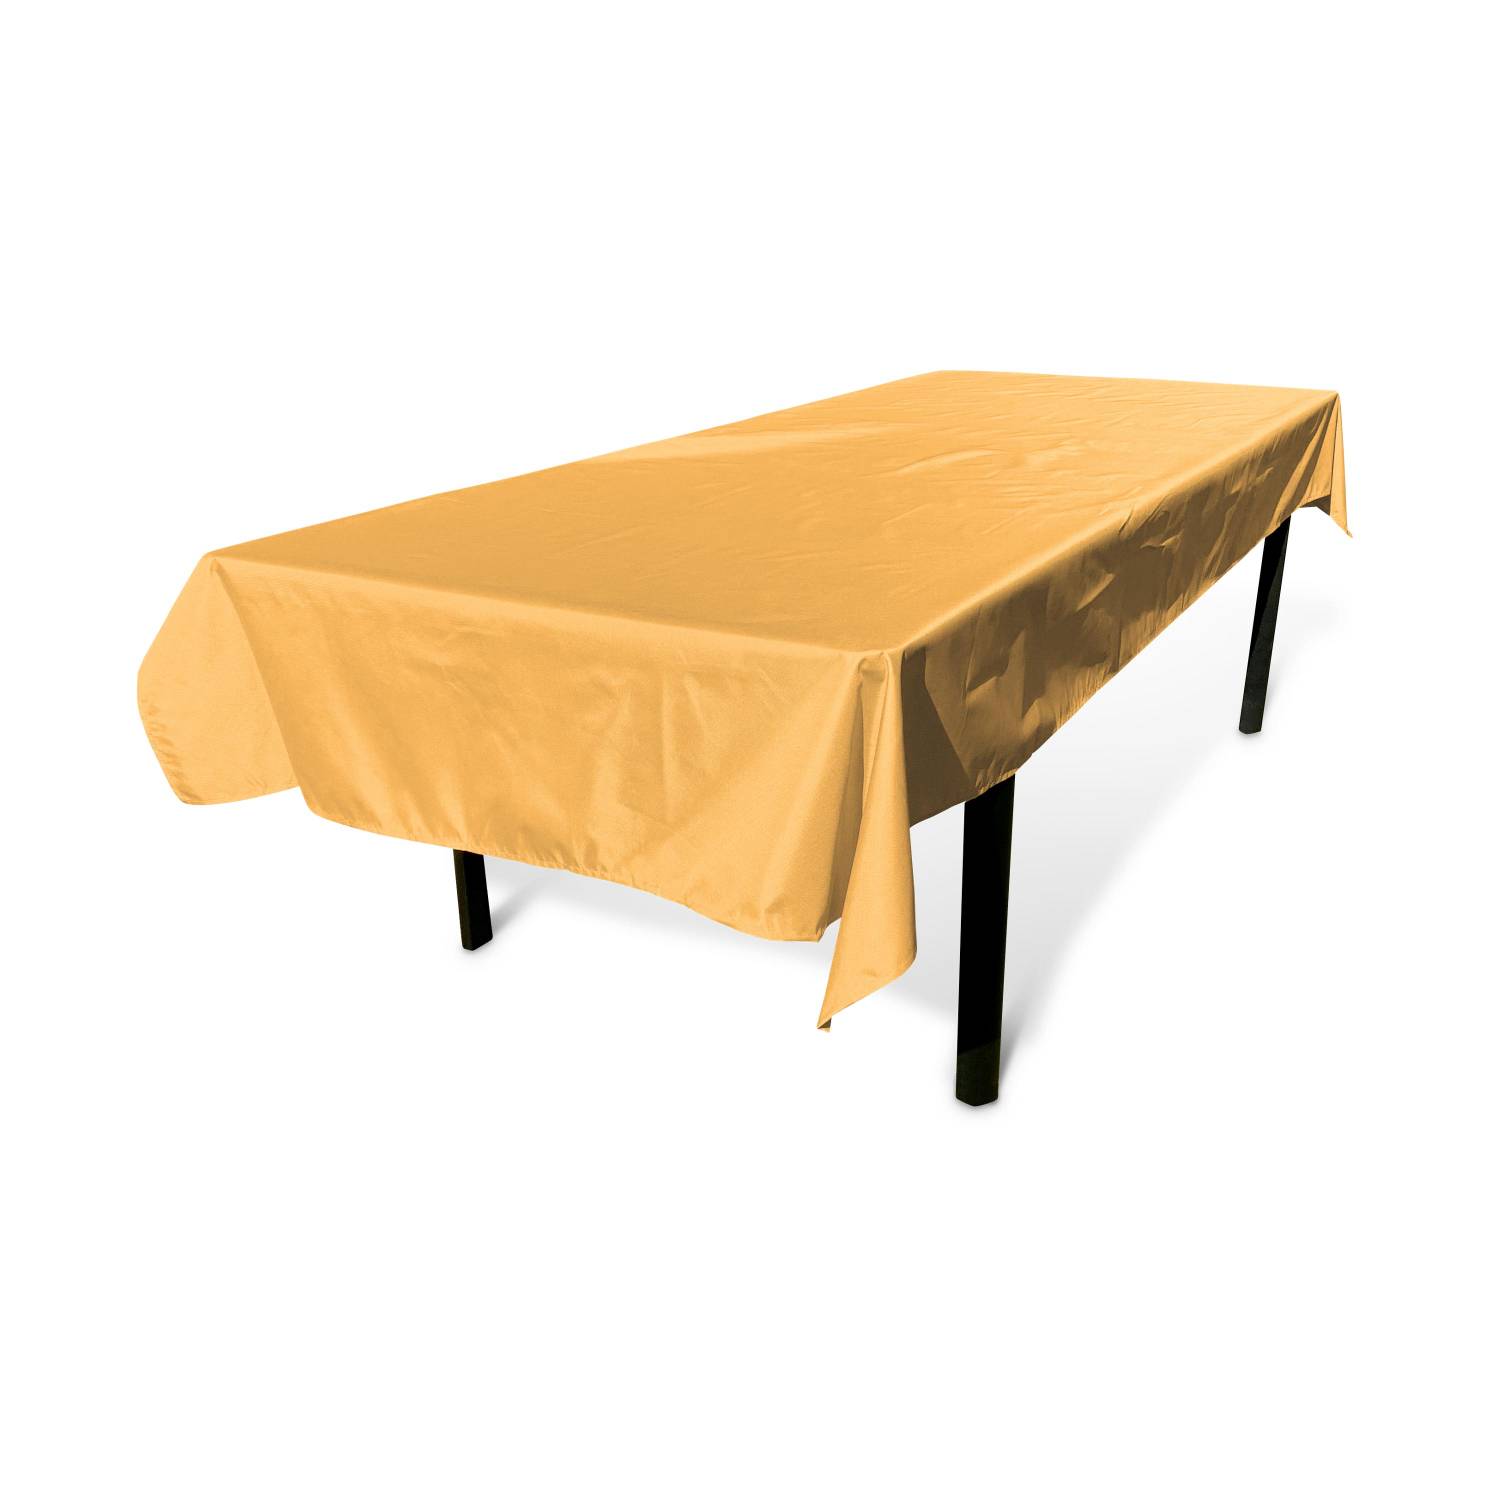 Outdoor-Tischdecke 300 x 140 cm Senffarben, 100% Polyester, schützt den Tisch, UV-Schutz, sommerlicher Stil | sweeek